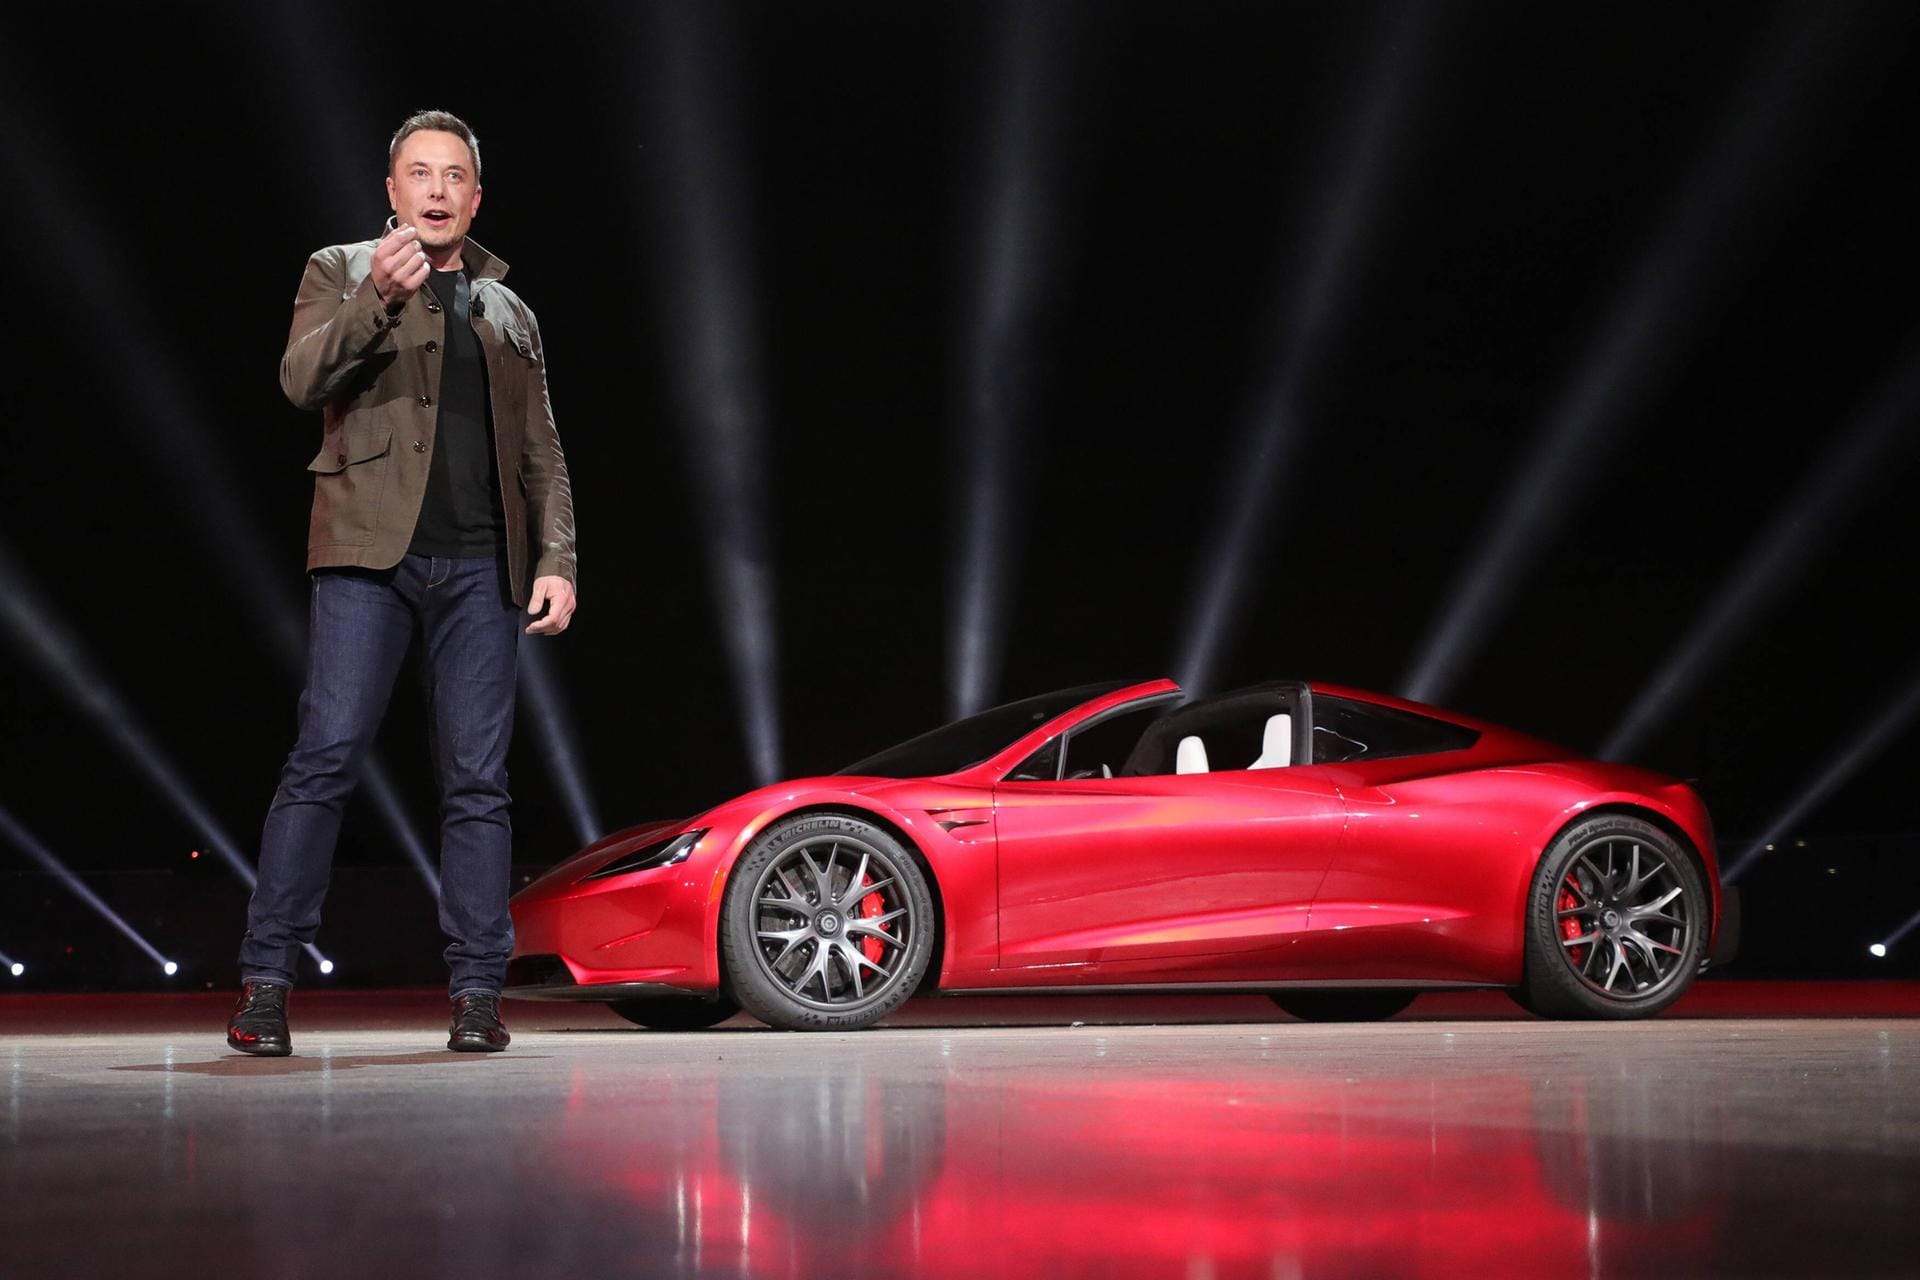 Elon Musk vor einem Tesla-Modell: Seit 2004 investiert Musk in den Elektro-Auto-Hersteller und ist als Tesla-Chef weltweit bekannt.